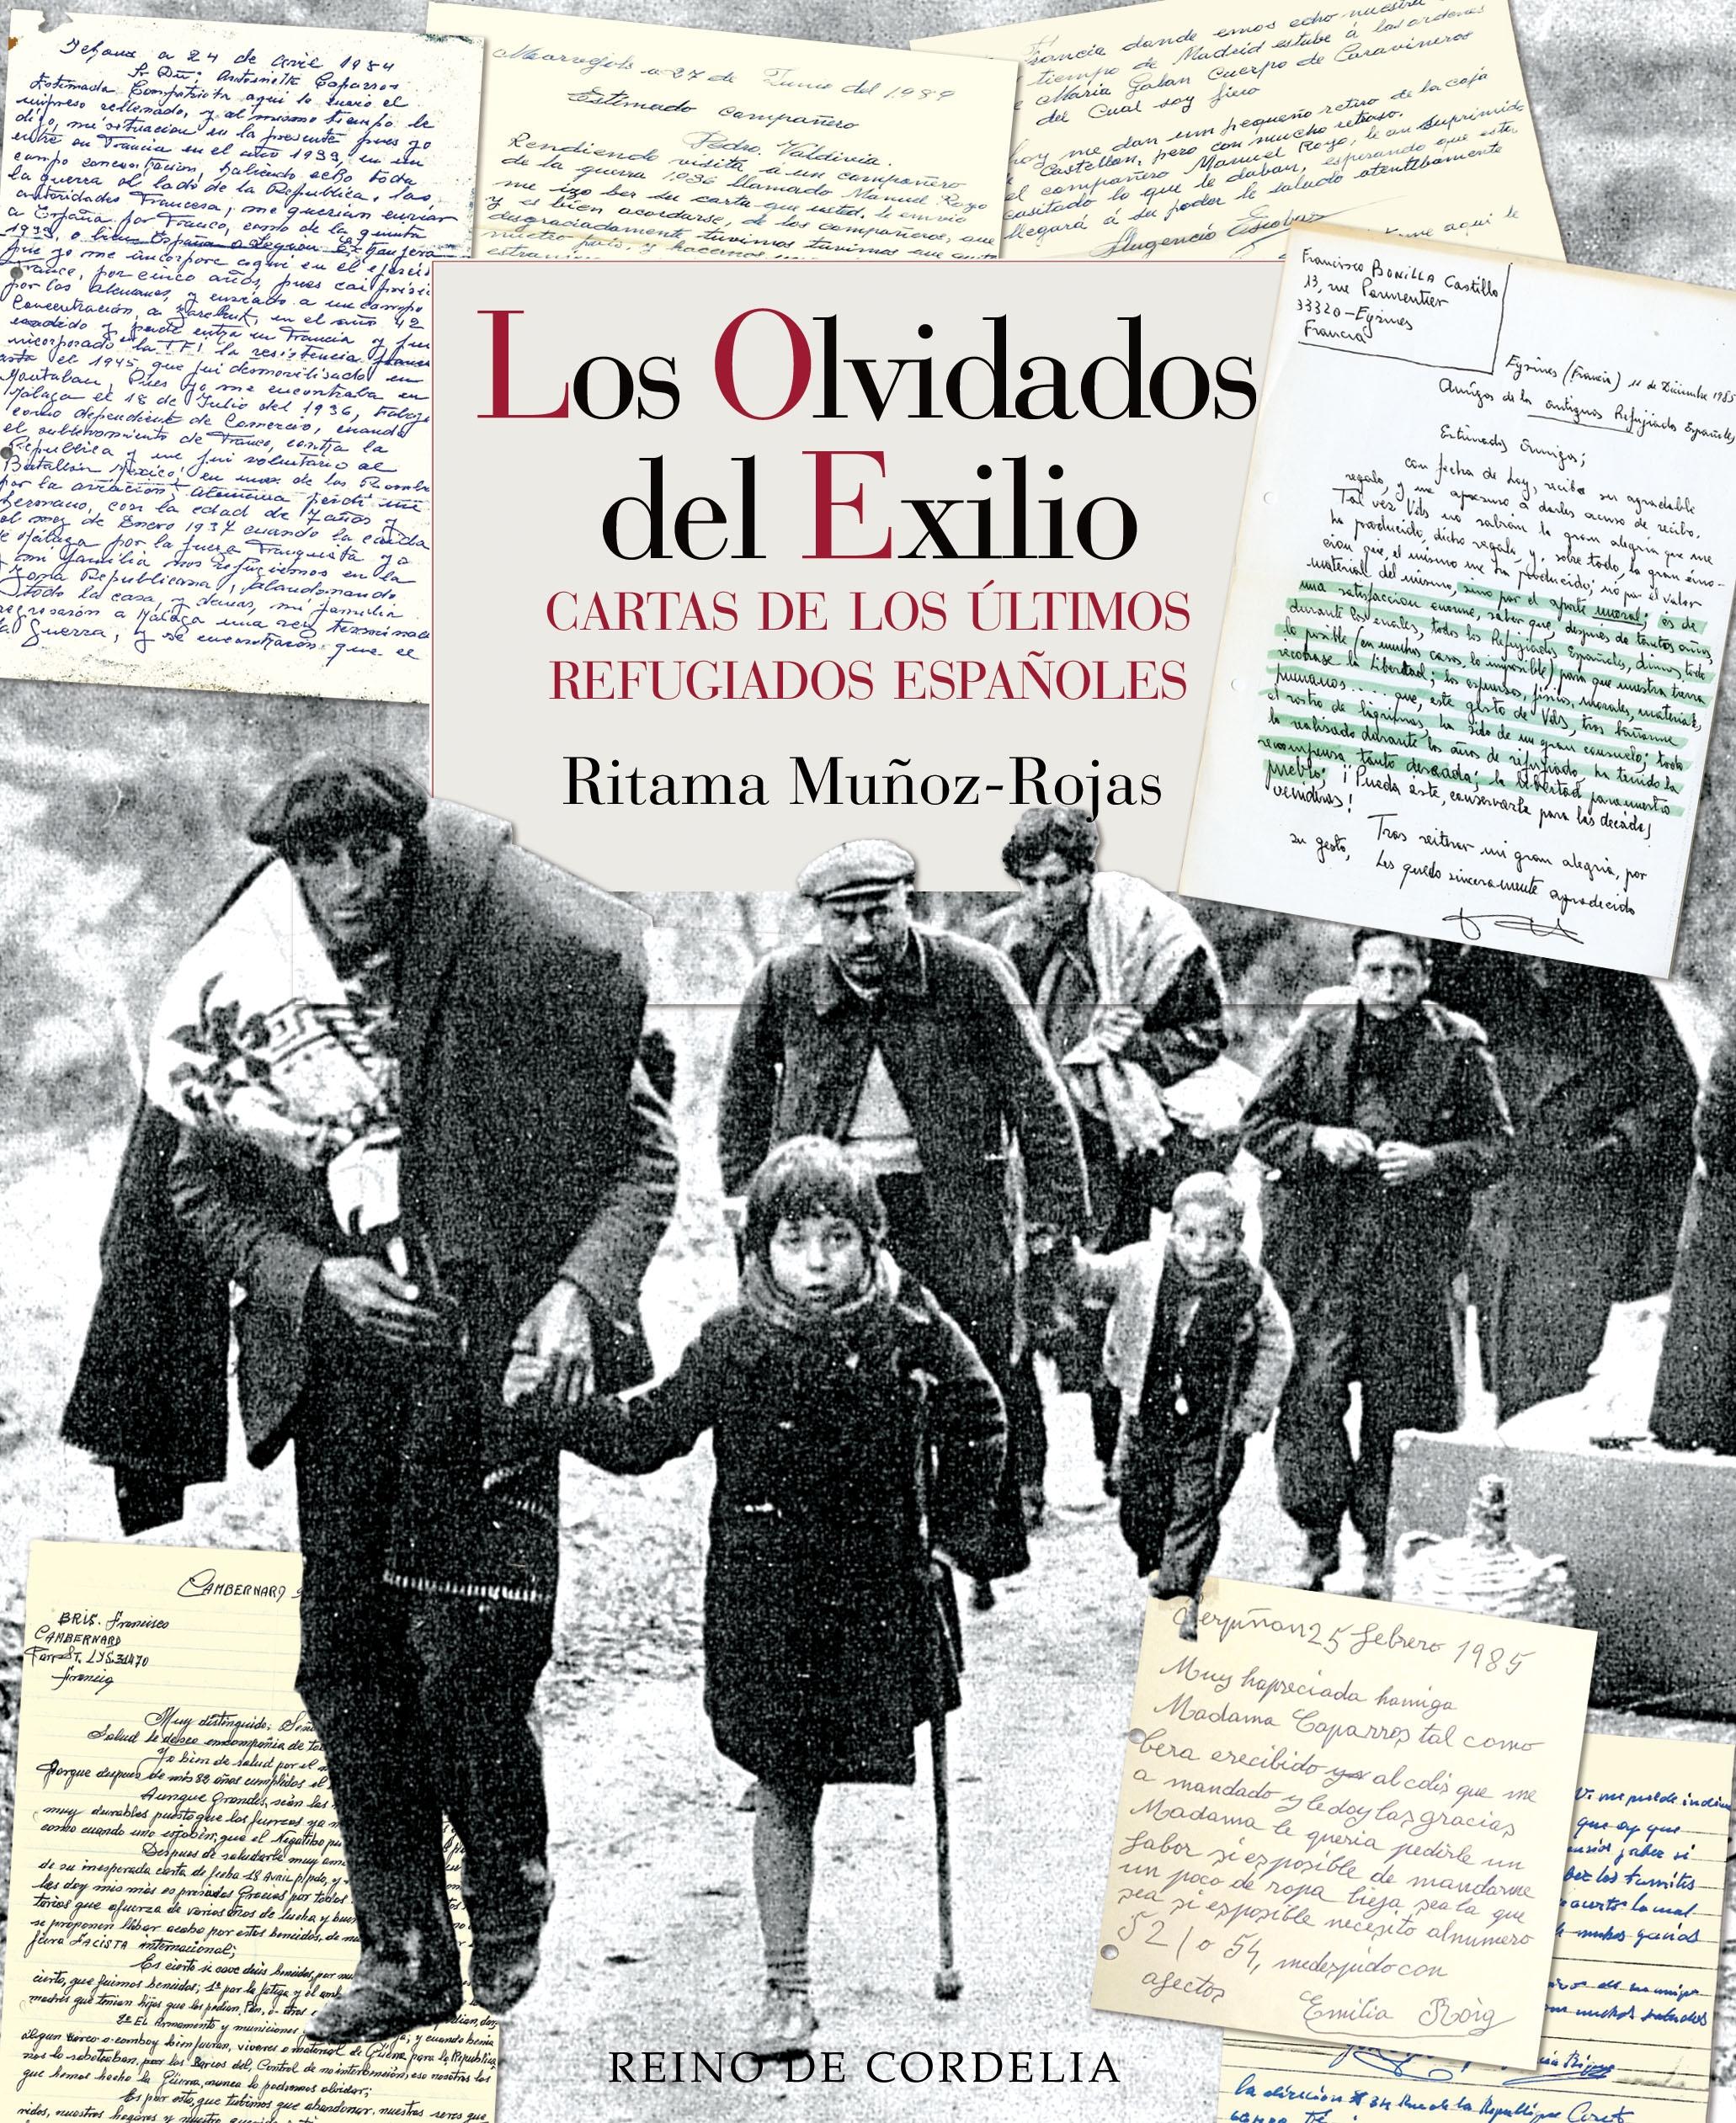 Los Olvidados del Exilio "Cartas de los Ultimos Refugiados Españoles"